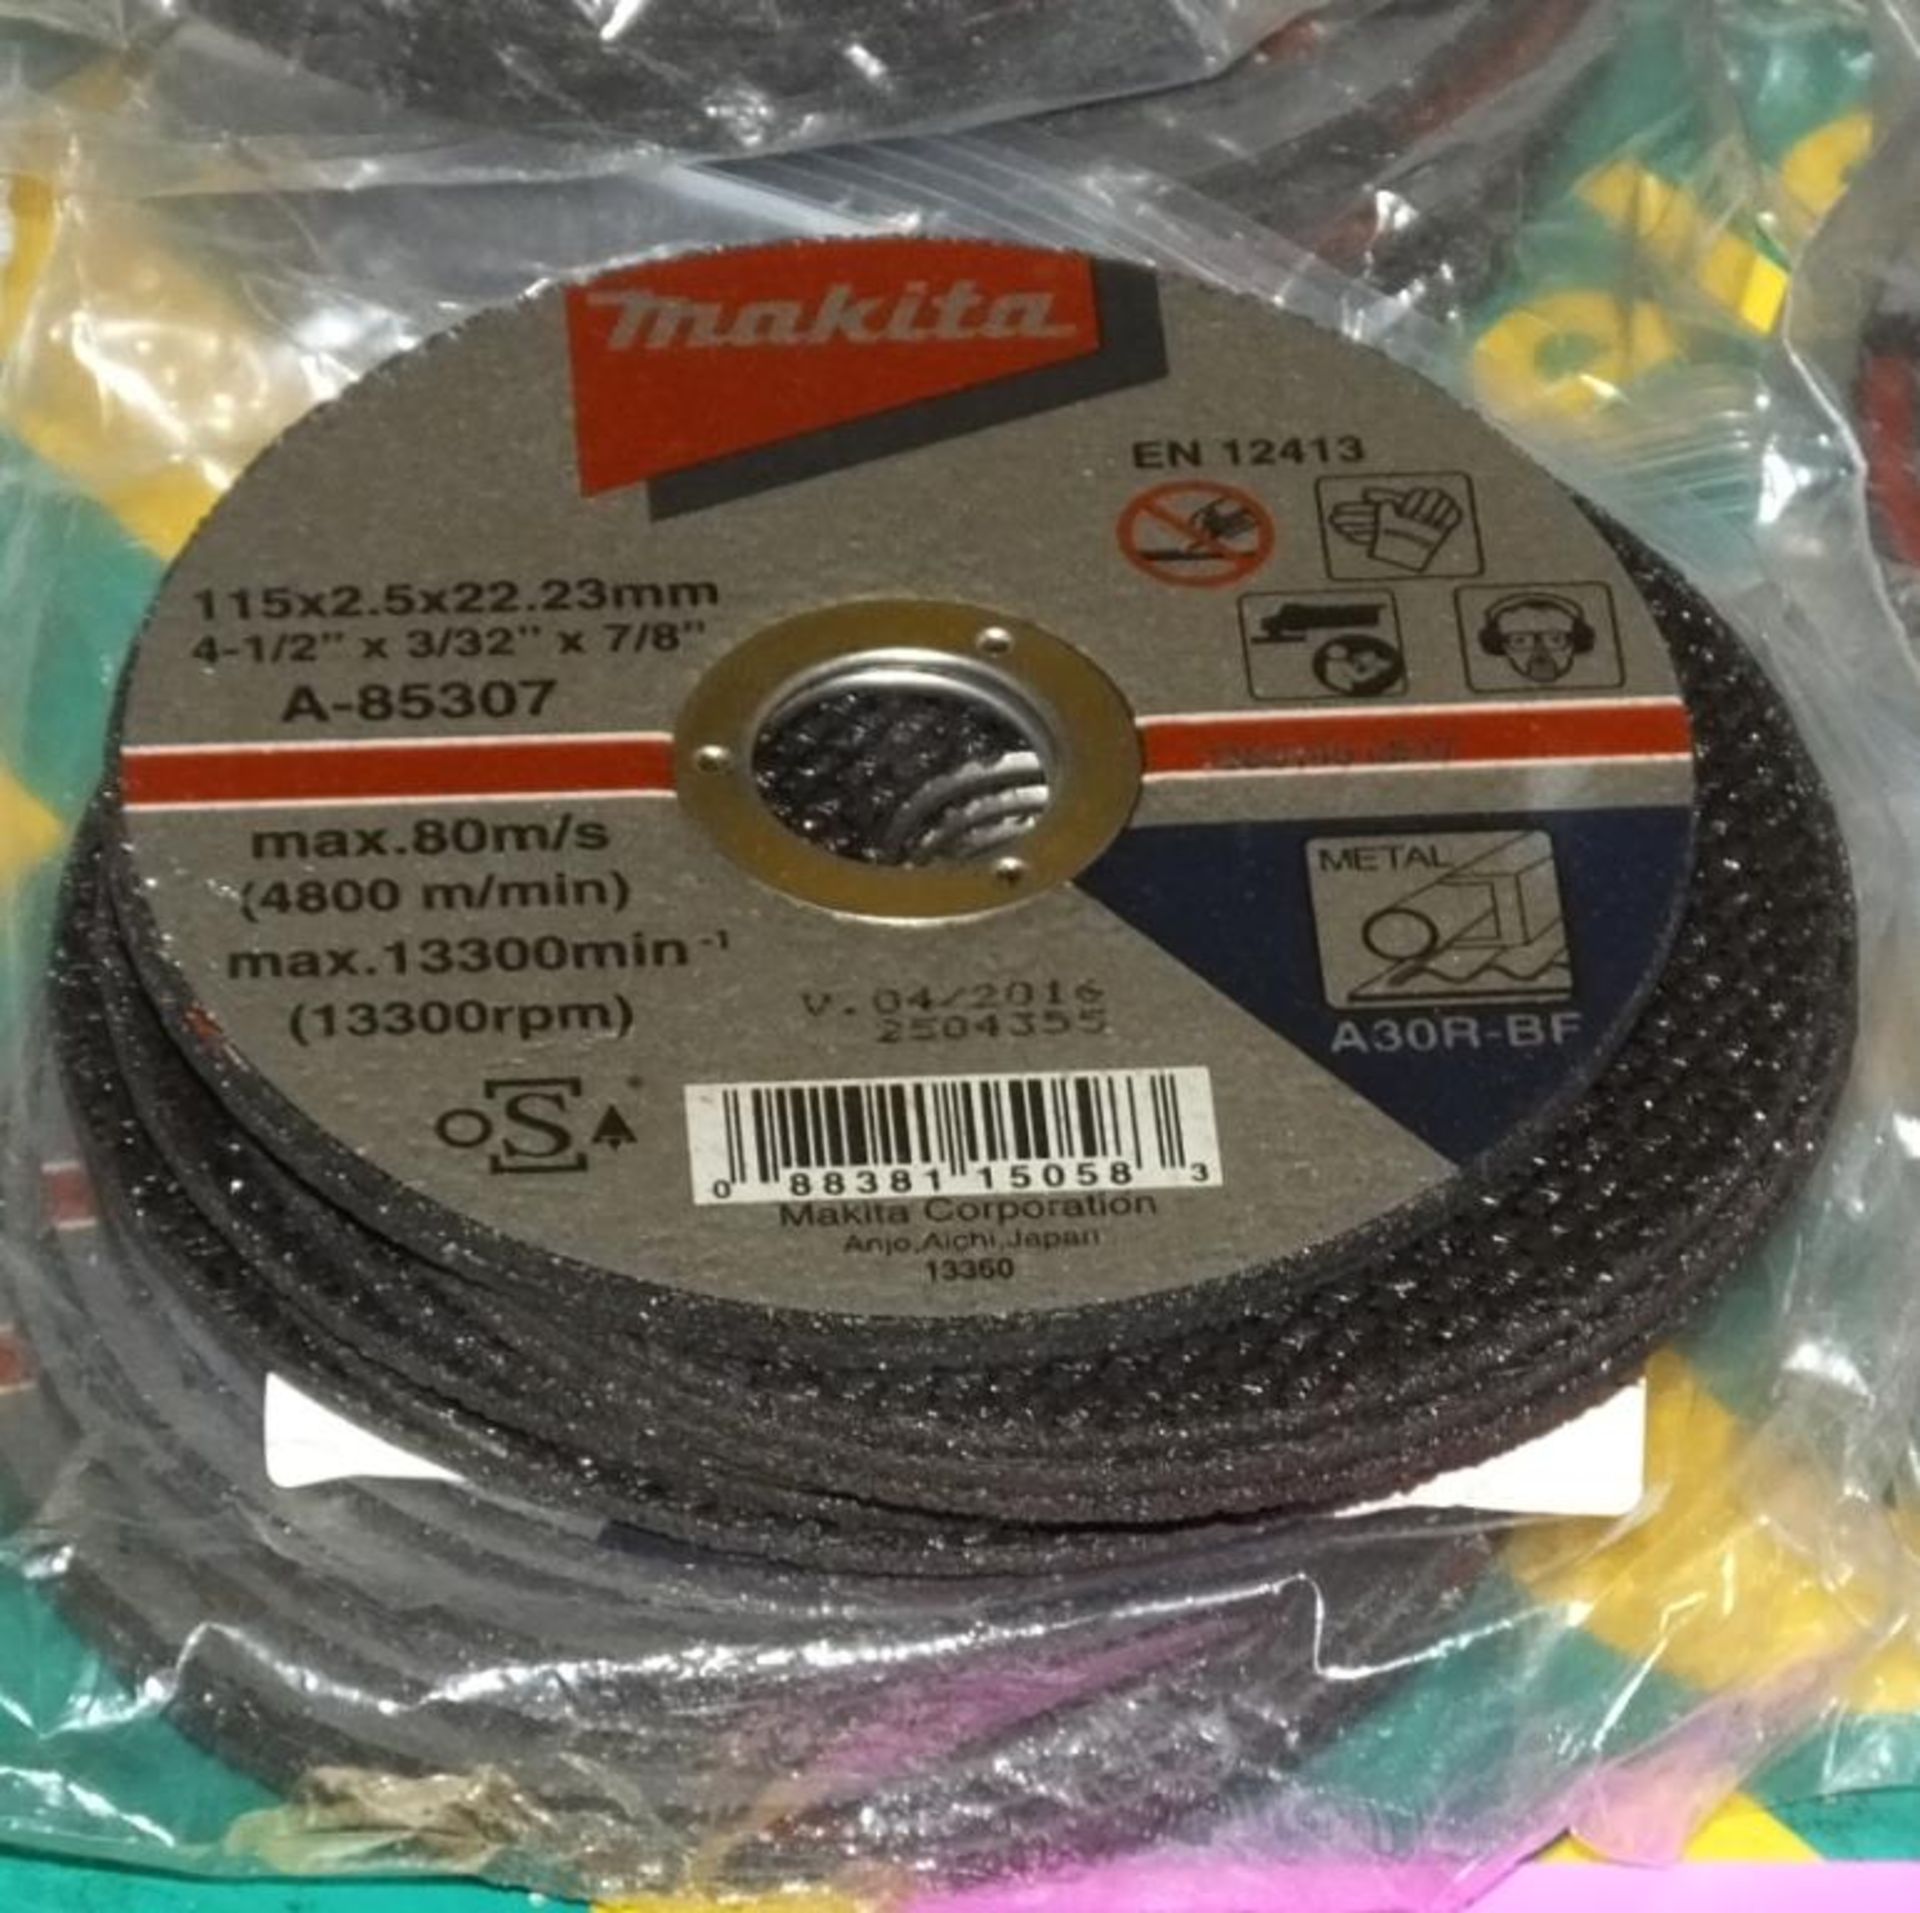 Makita Metal Cutting Discs - 5 per Pack - 22 packs - Image 2 of 2